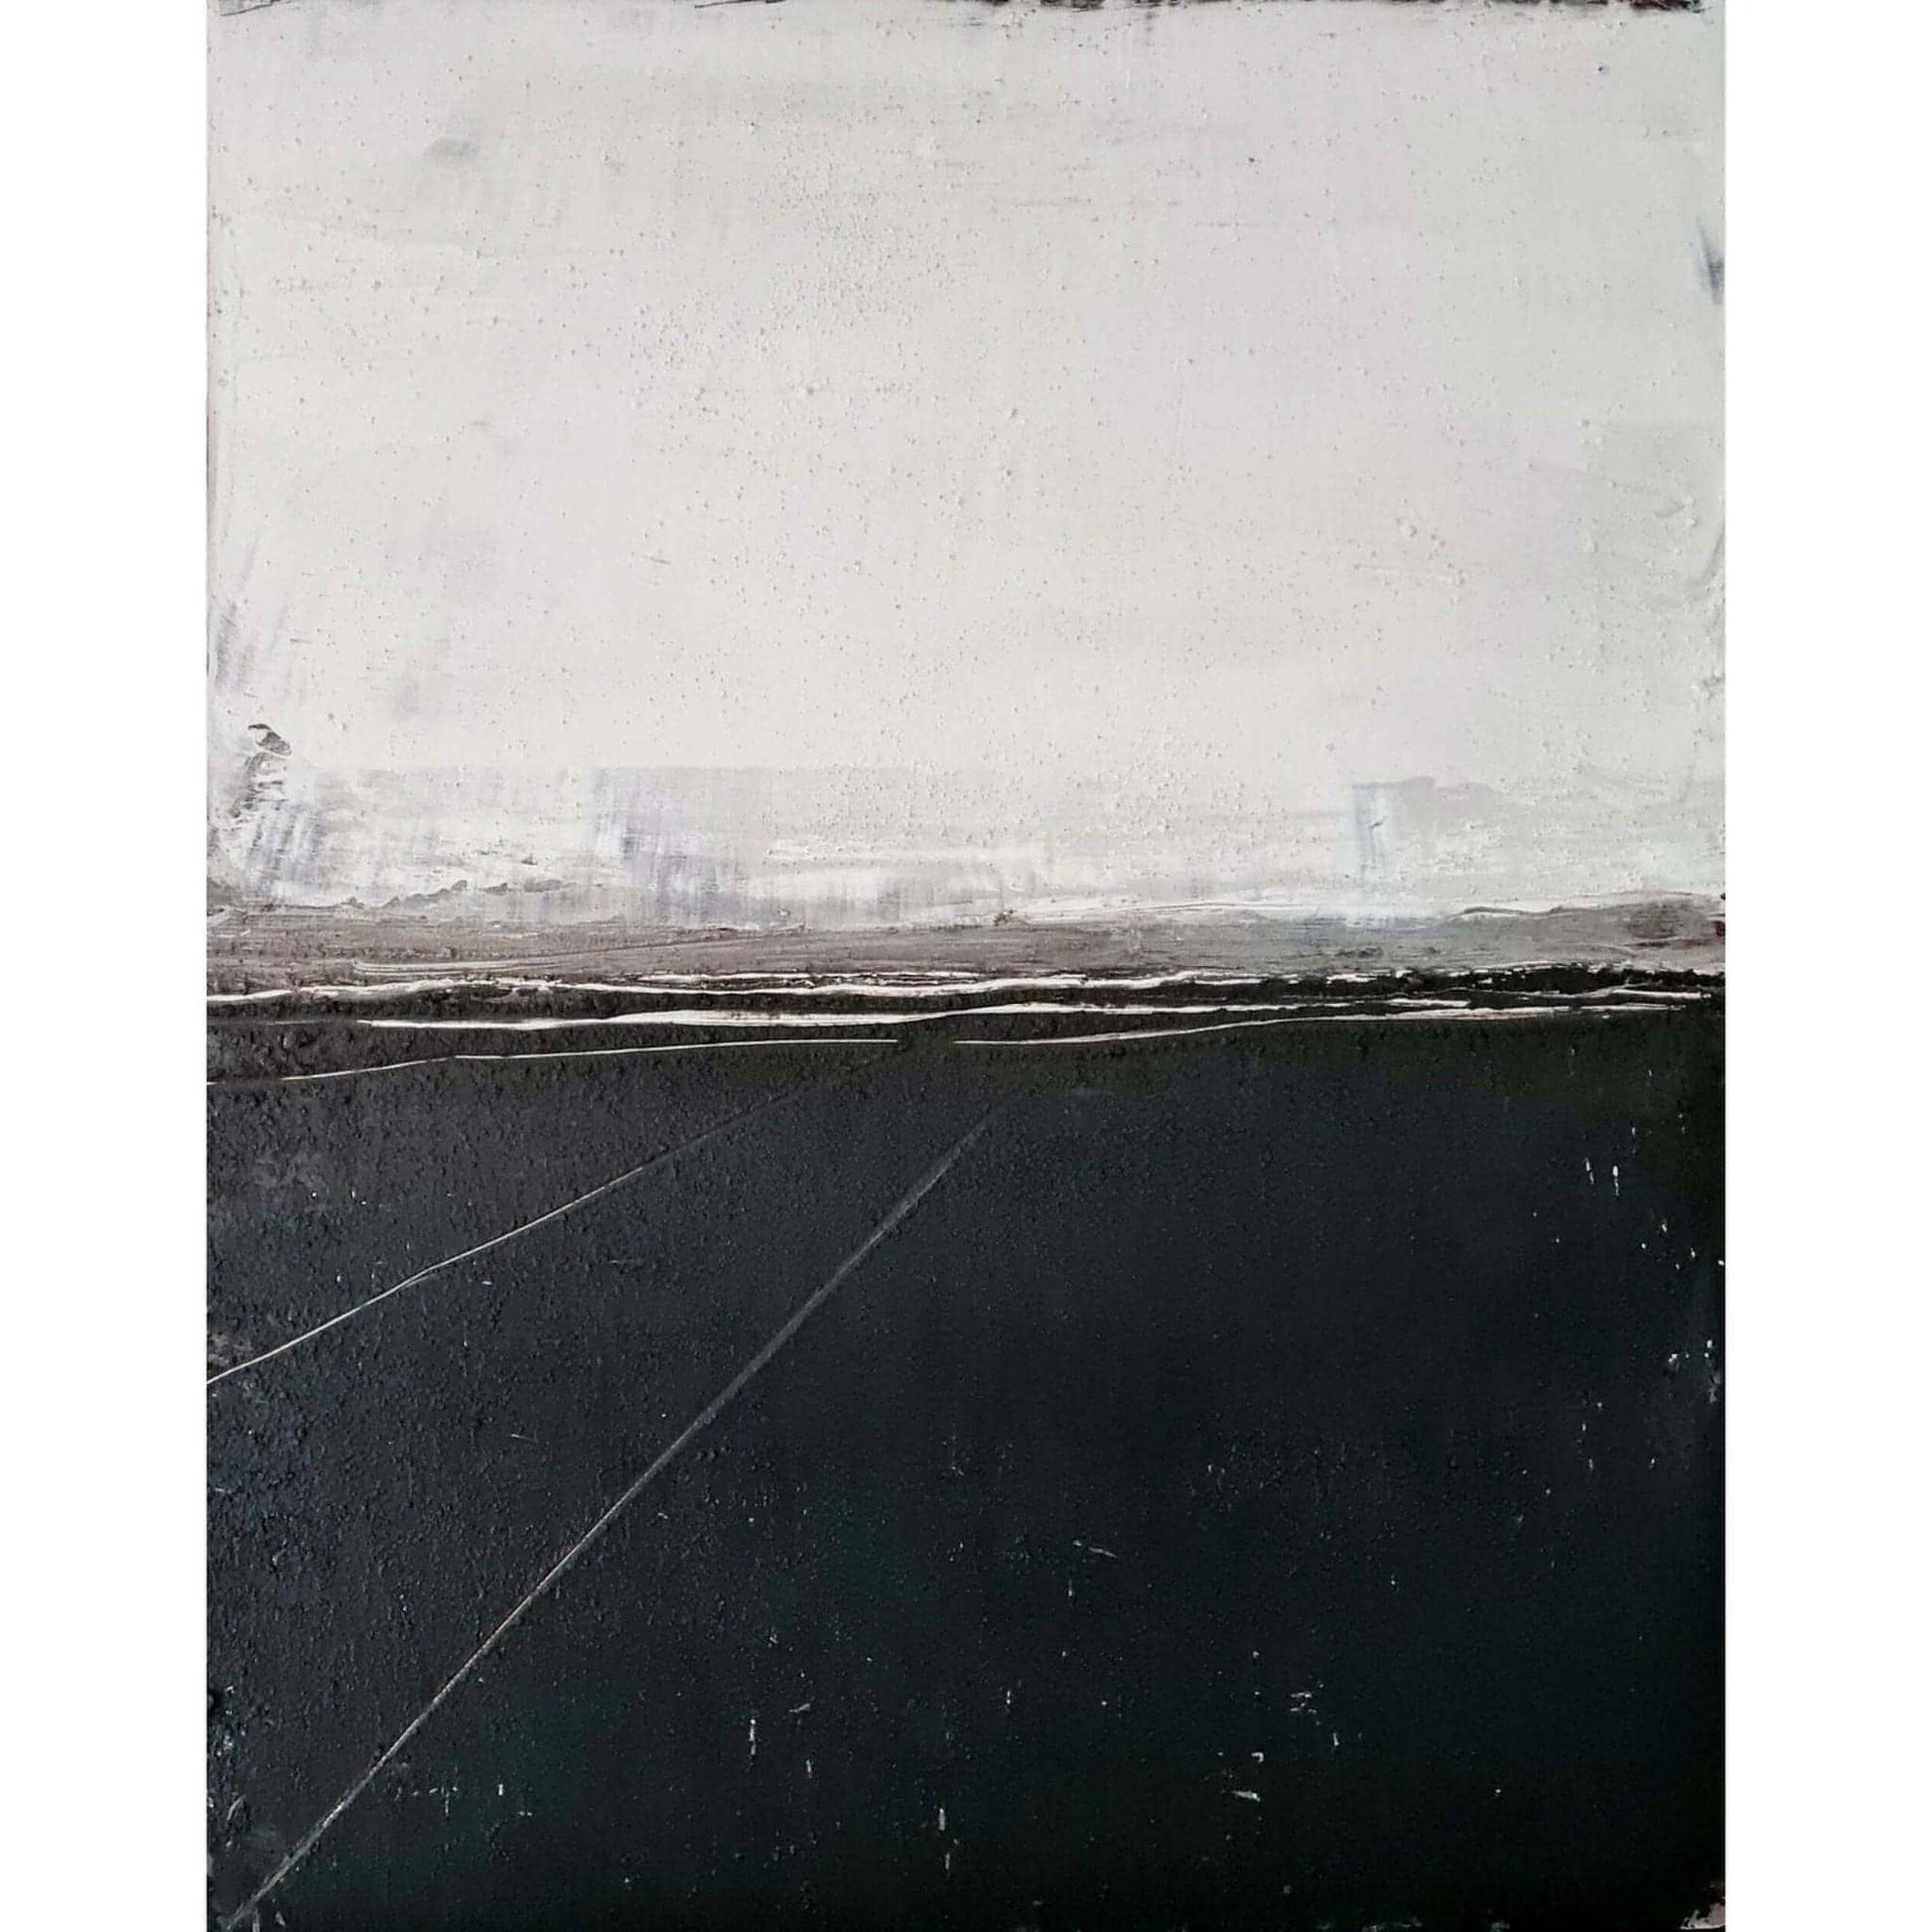  Ruhe / 50 x 70 cm / schwarz weiß, Ruhe / 100 x 80 cm / schwarz weiß, Ruhe / 120 x 100 cm / schwarz weiß, Ruhe / 200 x 120 cm / schwarz weiß  abstrakte acrylbilder auf leinwand